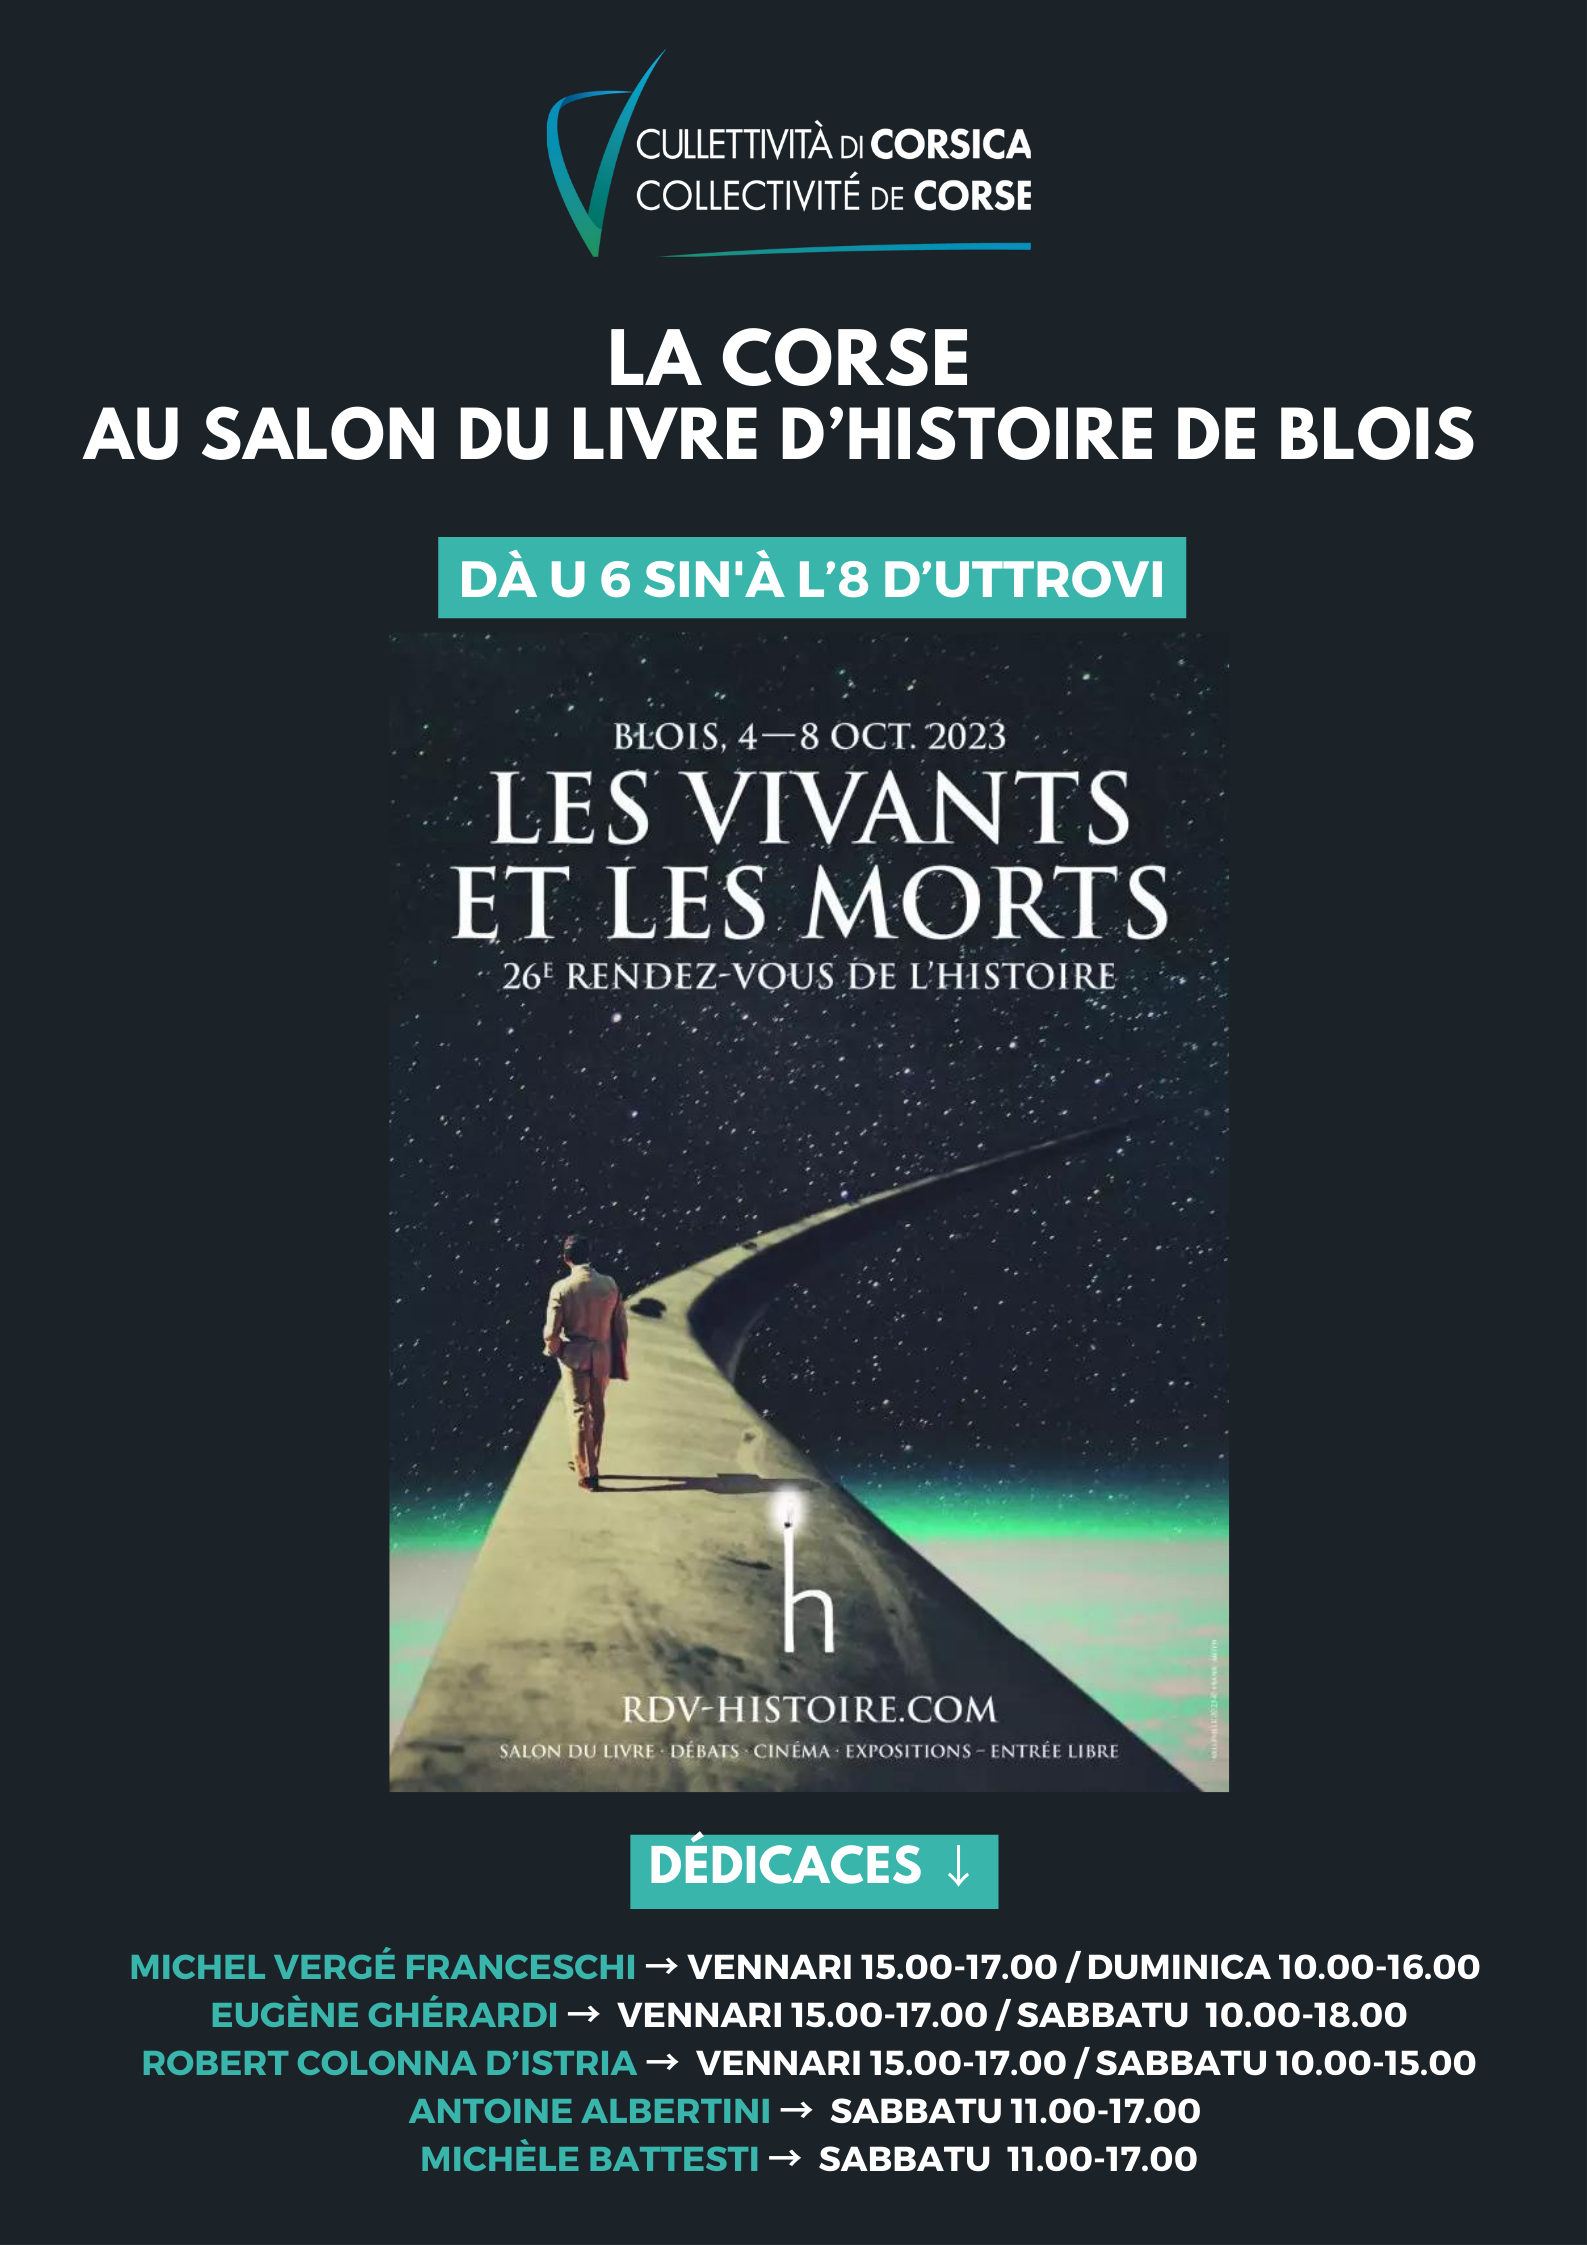 La Corse au Salon du livre de Blois "Les Rendez-vous de l'histoire" du 6 au 8 Octobre